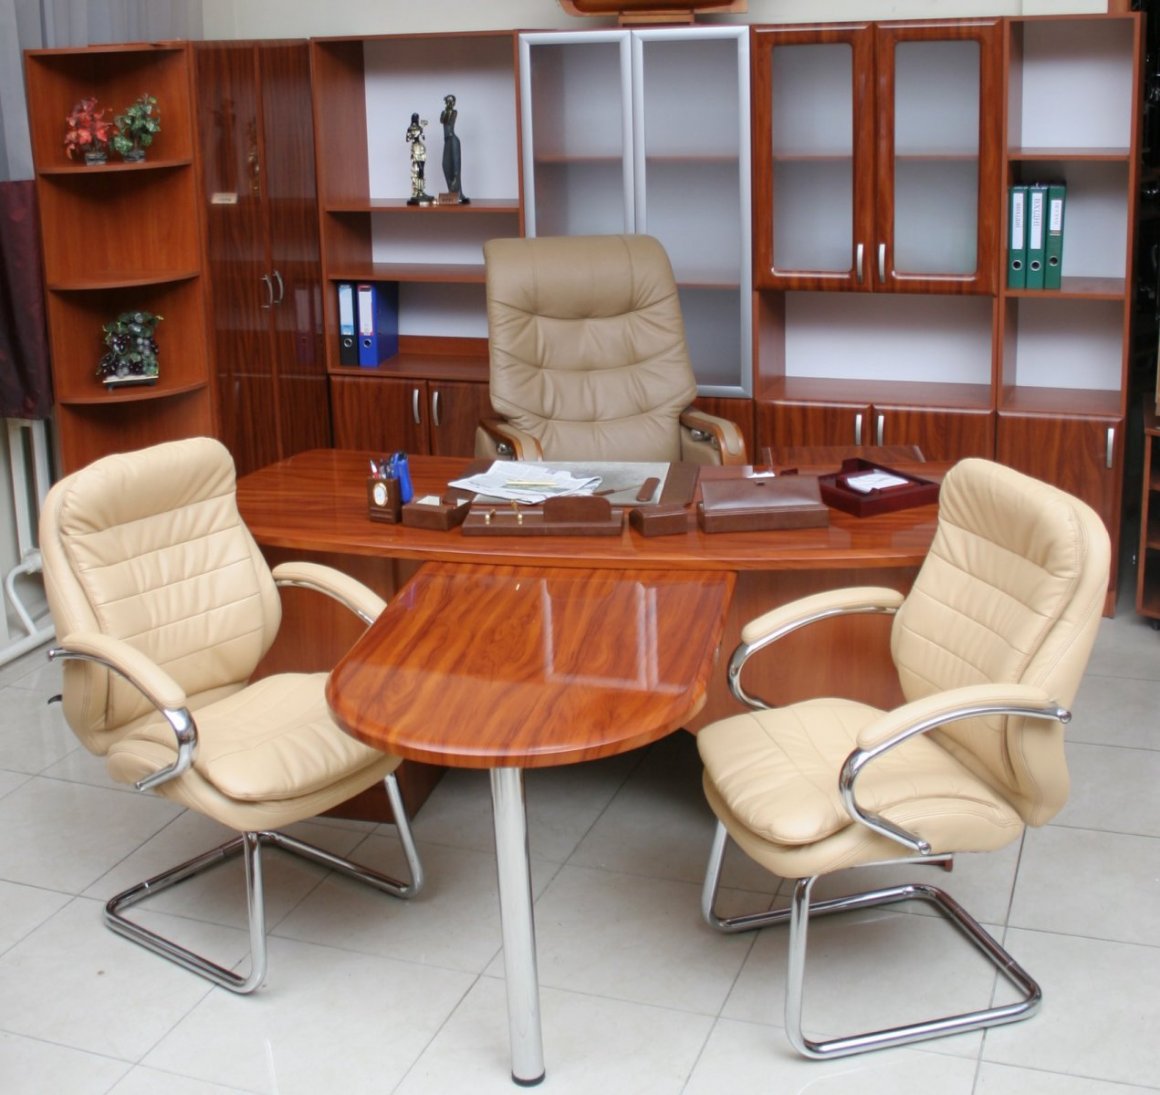 Серия офисной мебели Консул: кабинет руководителя Консул - доп. фото